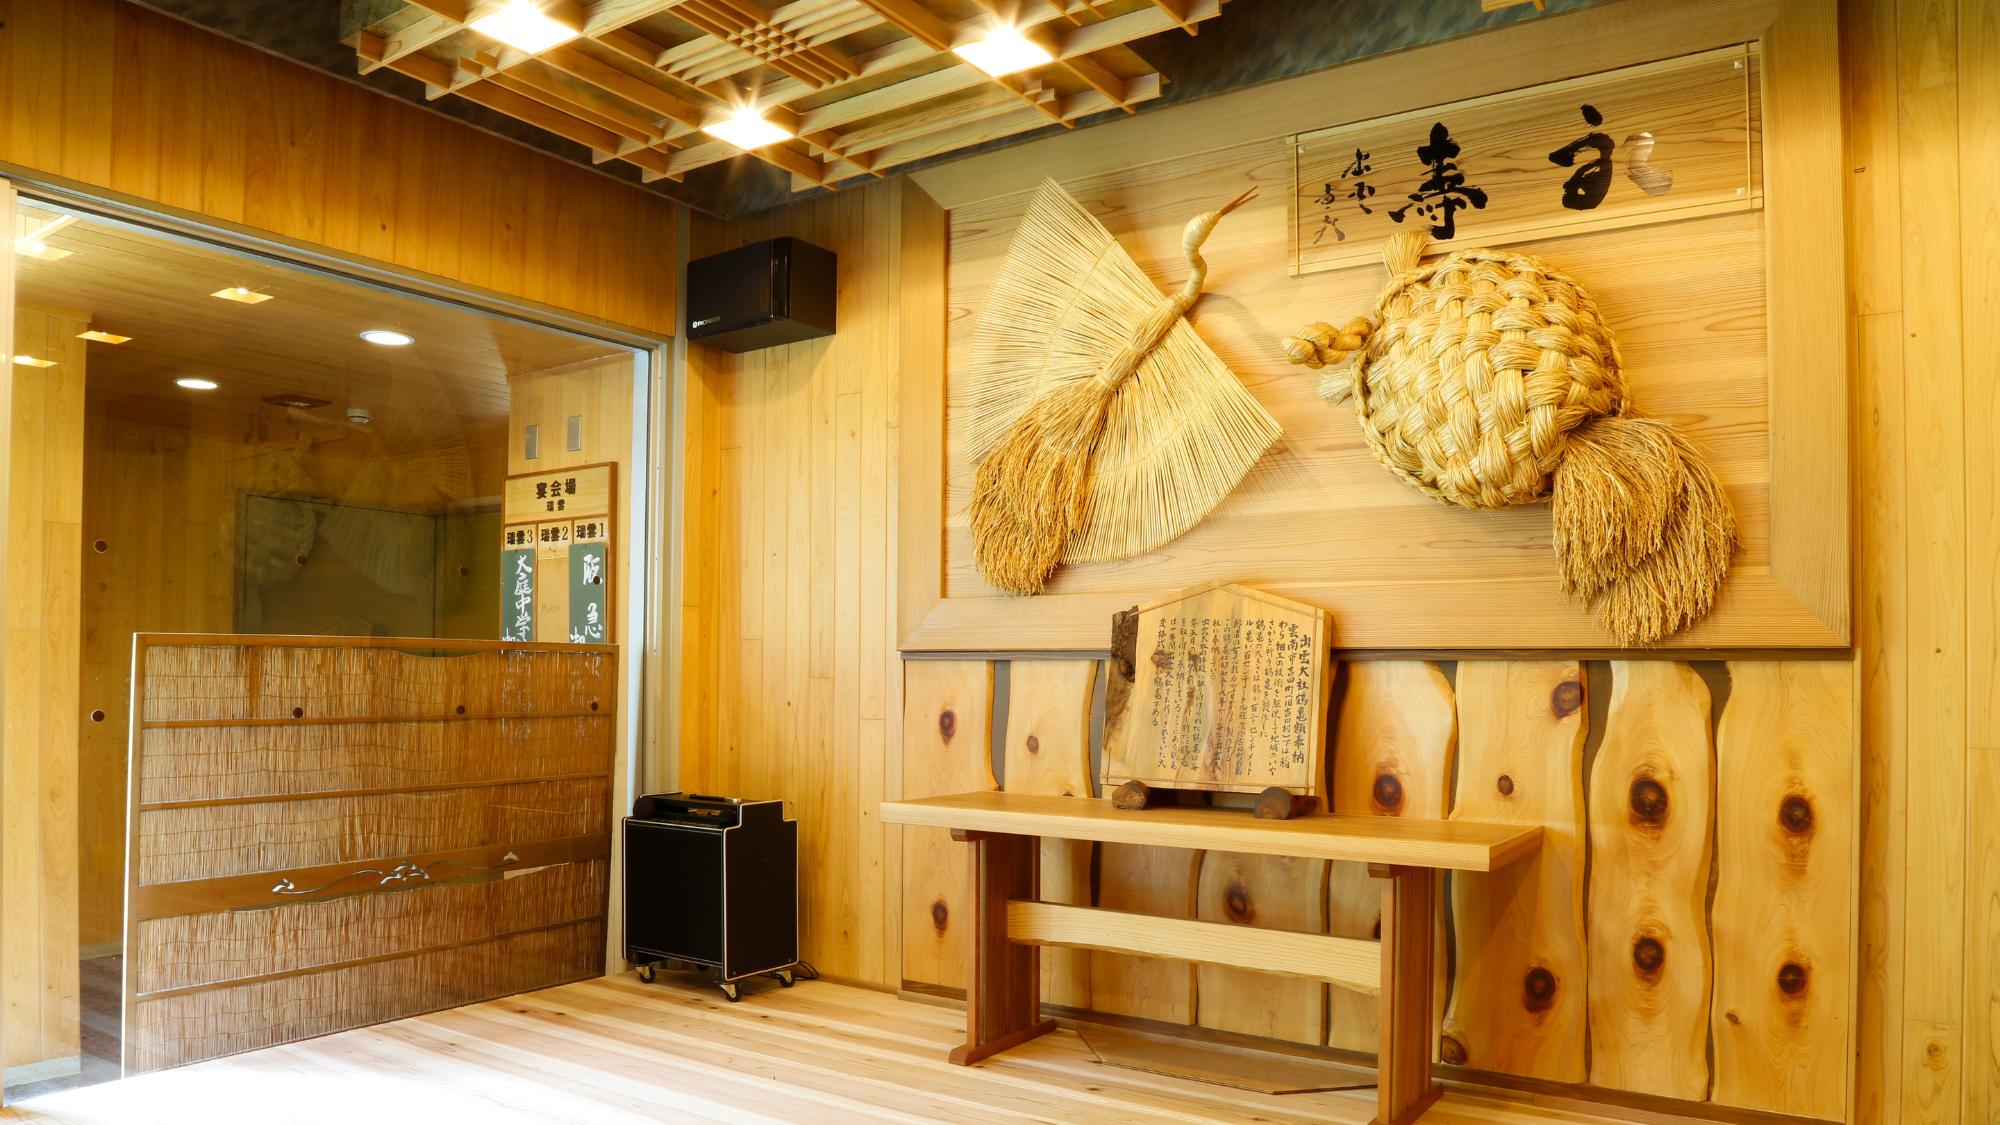 出雲大社に実際に飾られていた伝統工芸・藁細工の鶴と亀を譲り受け、展示しております。